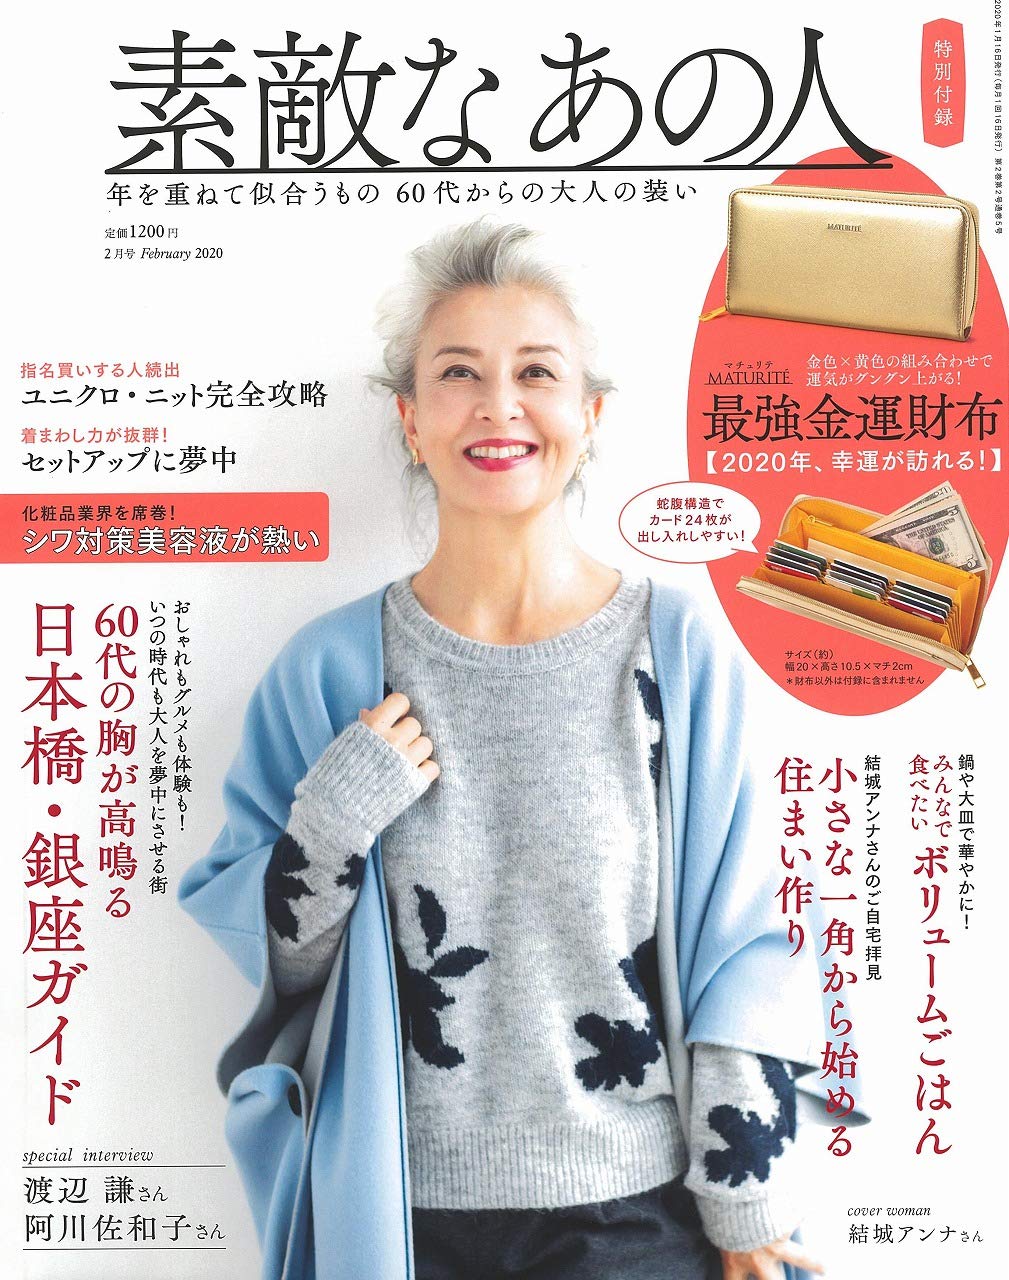 ３号連続完売 日本初60代ファッション誌が好調 新しい60代 素敵世代 が熱い 株式会社 宝島社のプレスリリース